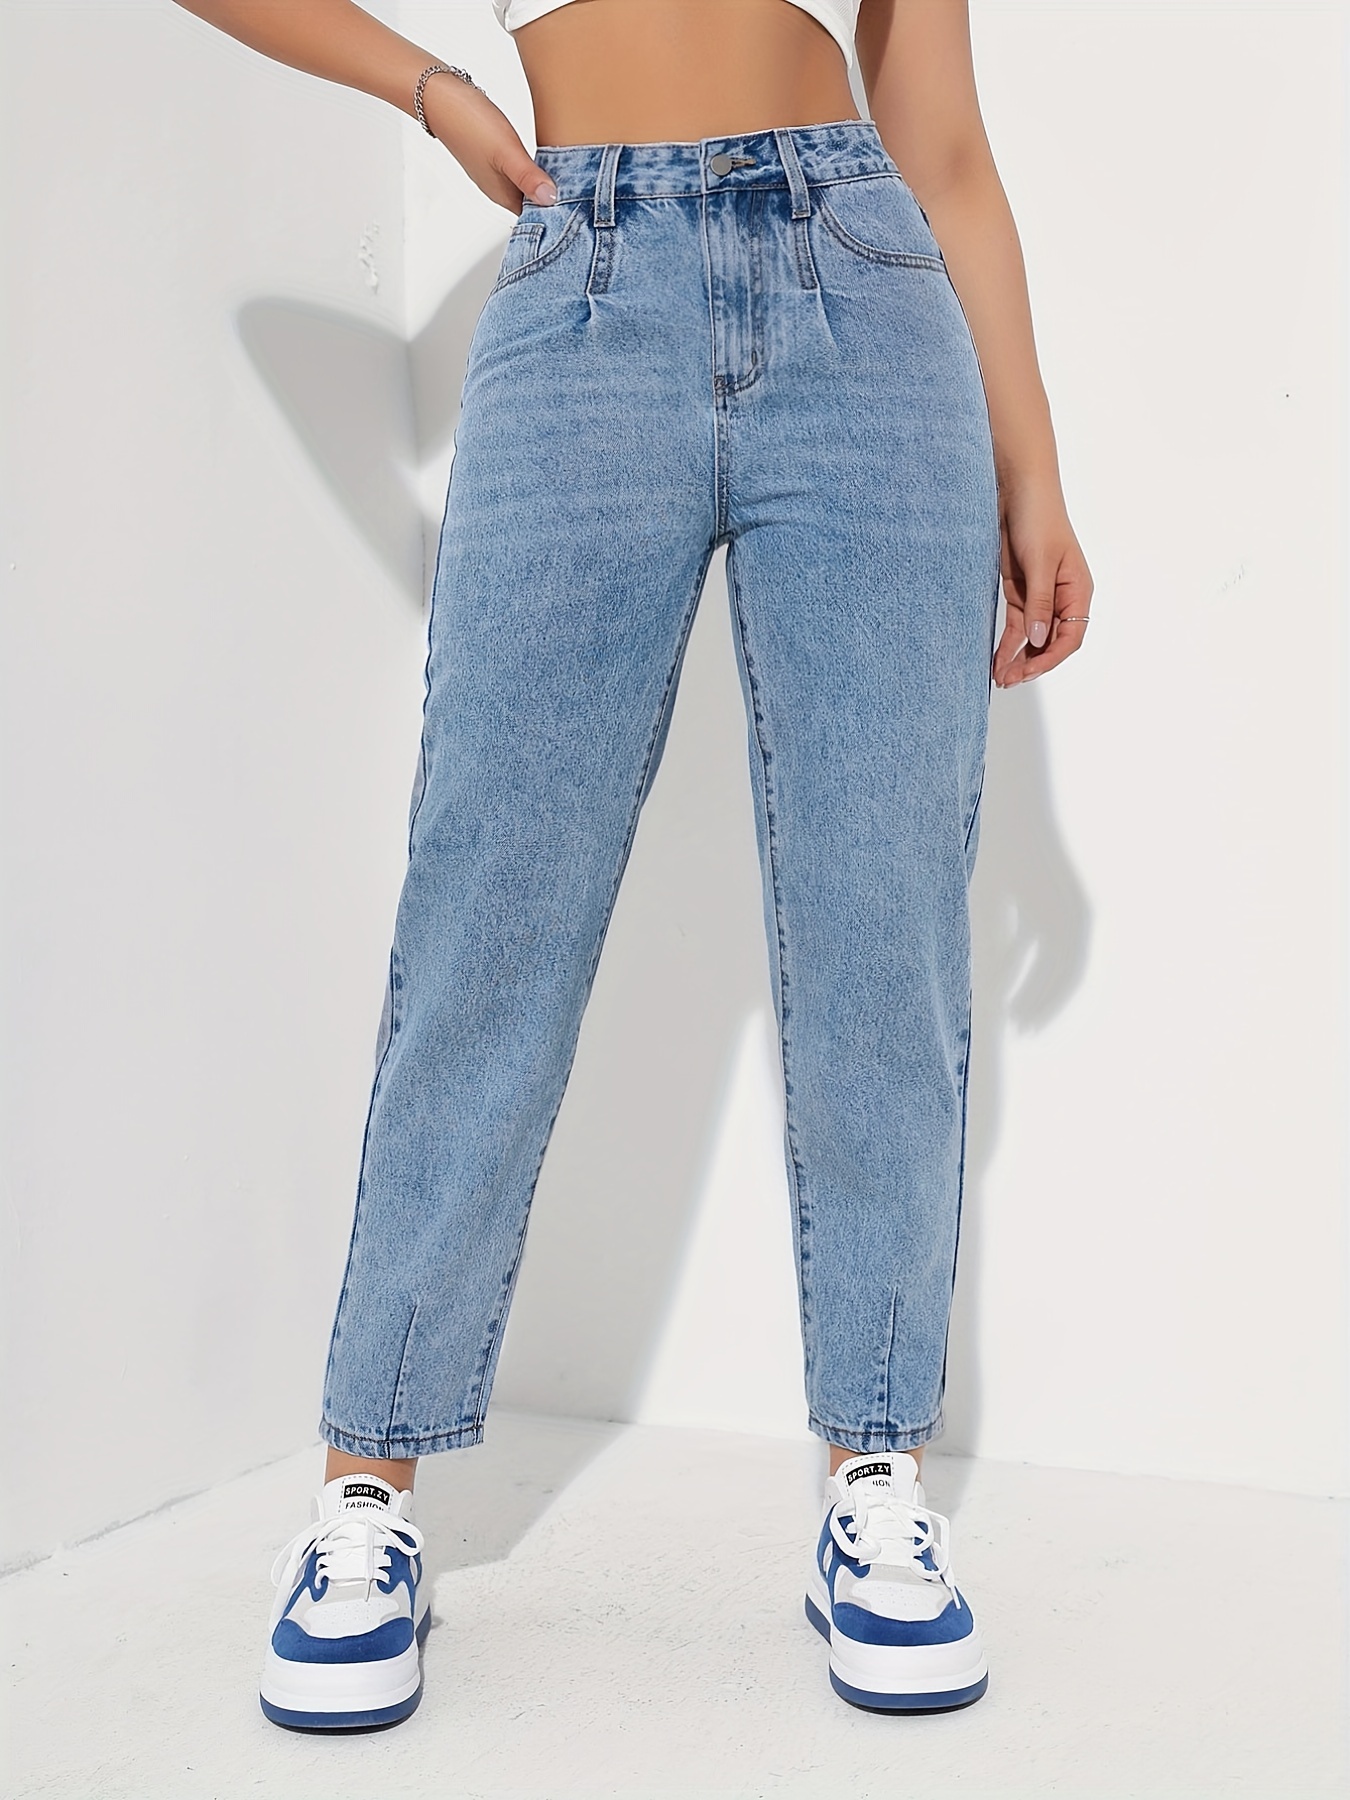 Slant Pockets Split Jogger Pants, Non-Stretch Niche Denim Pants, Women's  Denim Jeans & Clothing